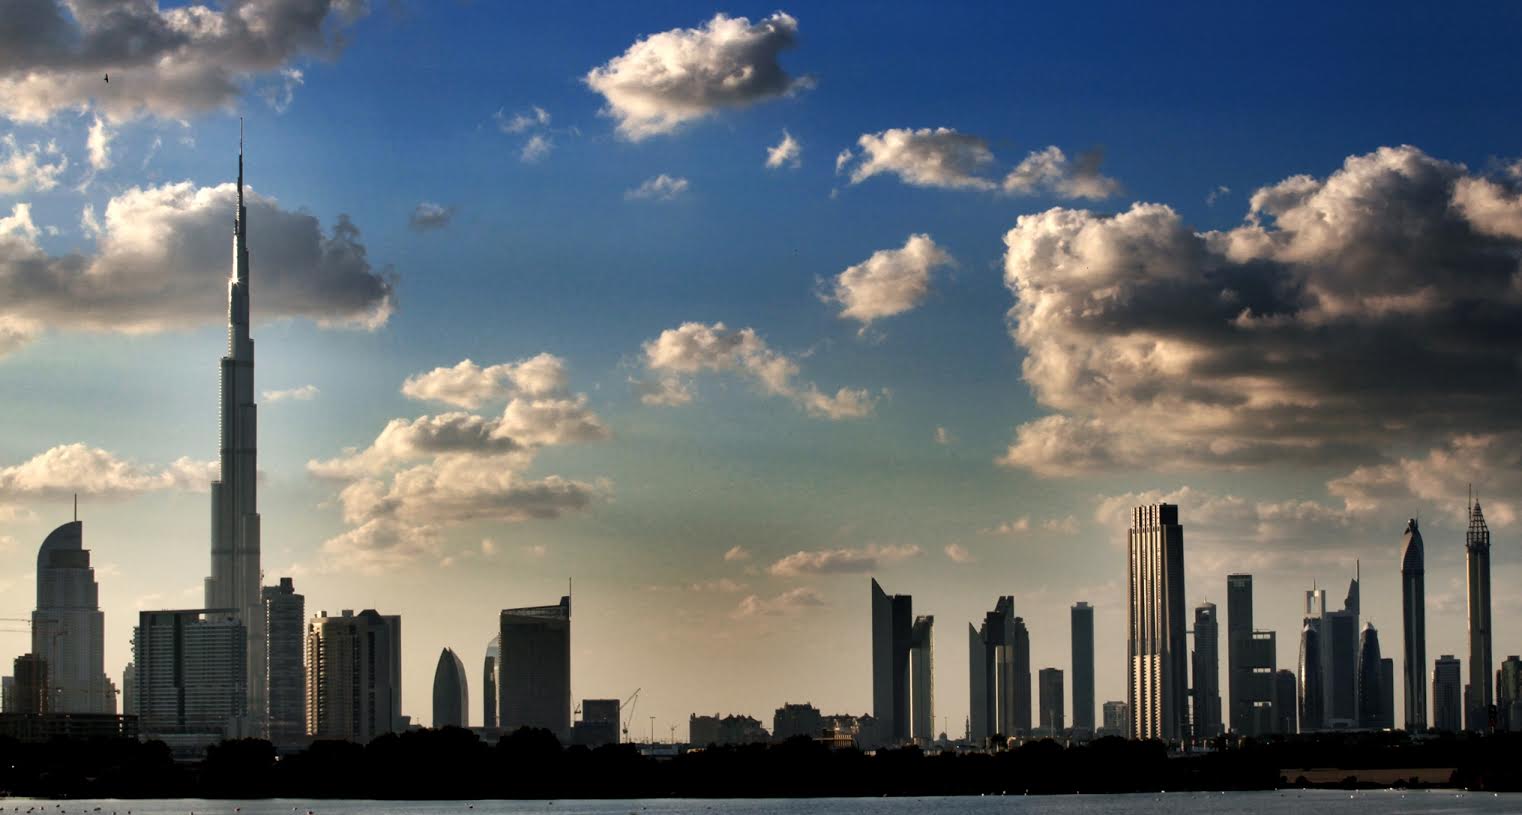 عائدات التأجير السنوي للشقق السكنية اكبر من الفلل في دبي